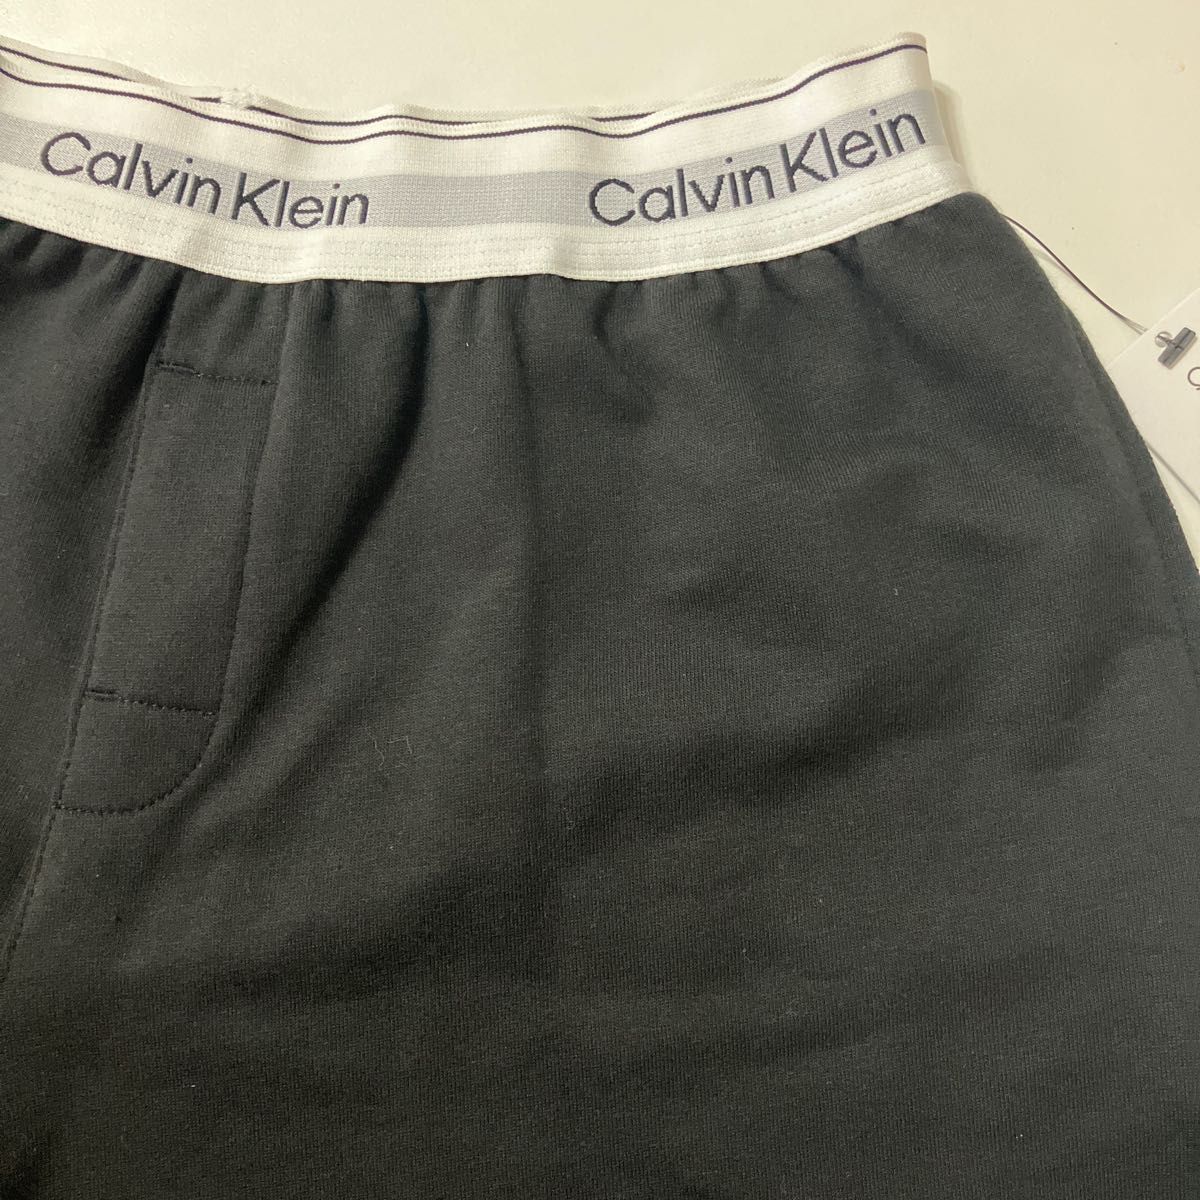 Calvin Klein カルバンクライン ルームウェア ショートパンツ 黒 新品 短パン レディース 女性